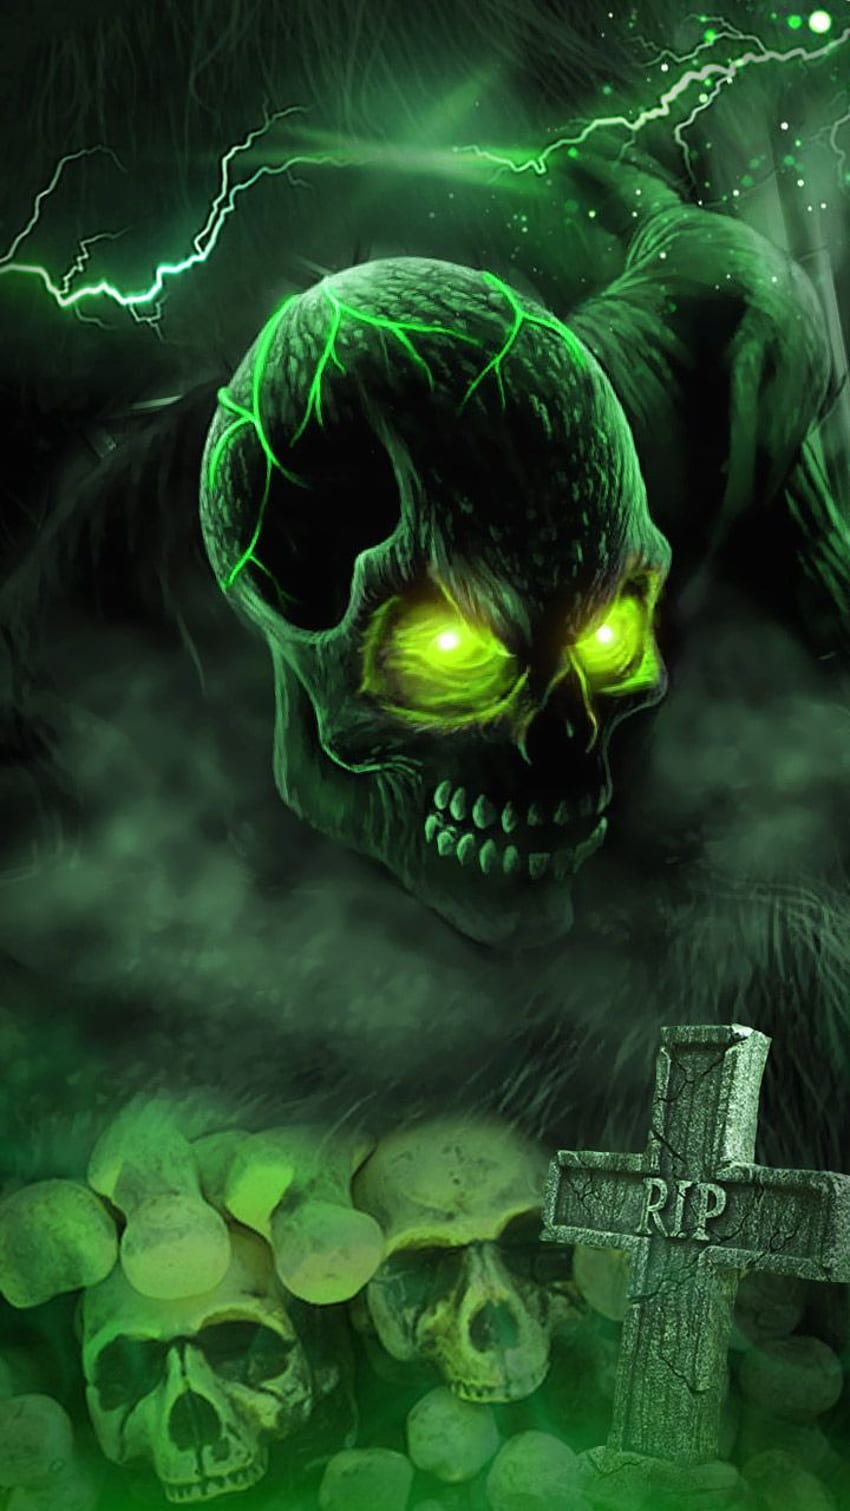 RIP Skull , paket tema lengkap dengan asap hijau dan guntur. Tengkorak neon yang menakutkan. wallpaper ponsel HD